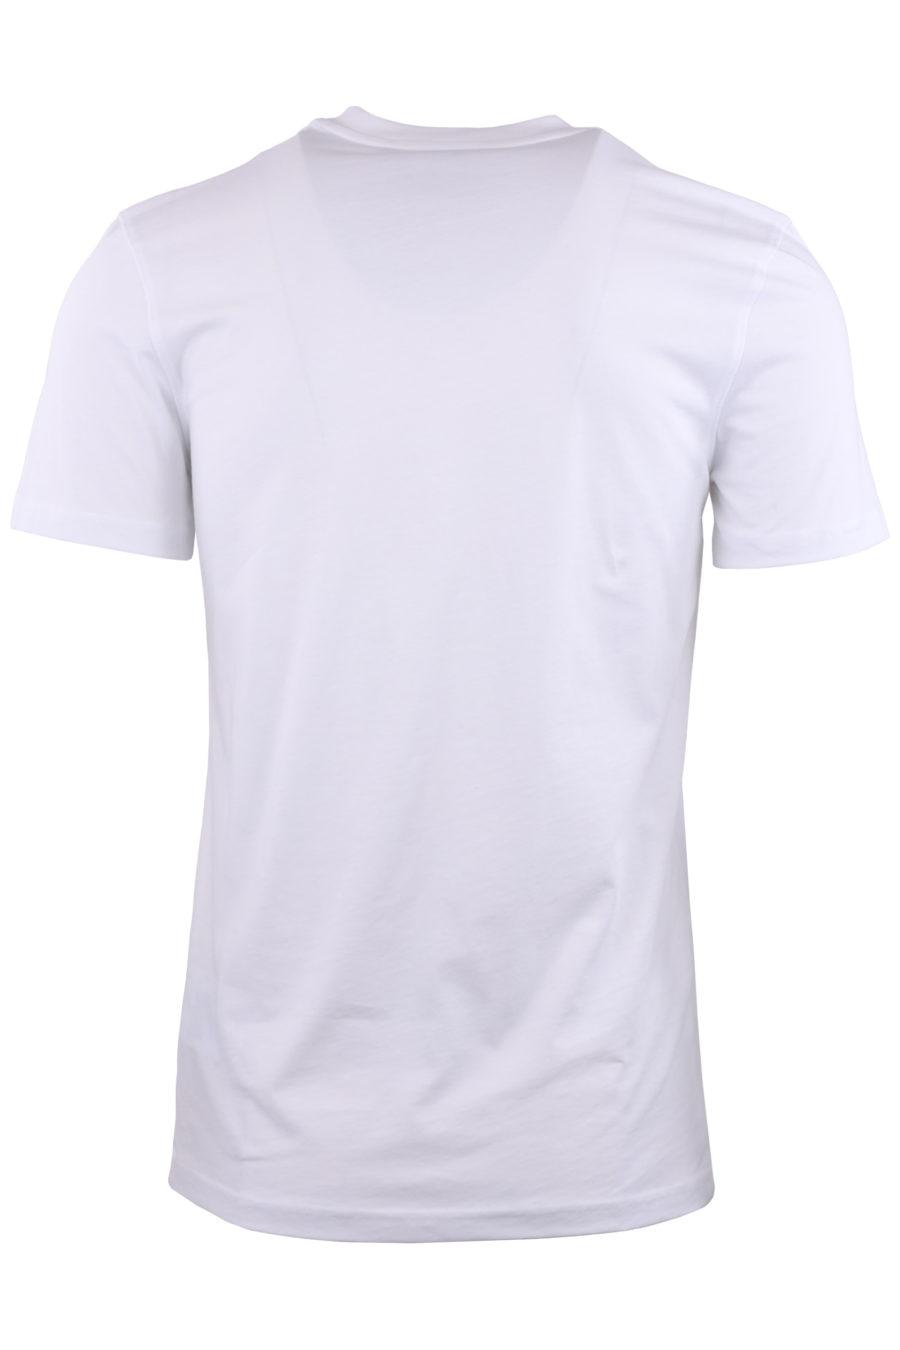 Camiseta blanca con "teddy" mix - da37cd6bd6704fccf7c797acd5cdb39ce6a2c449